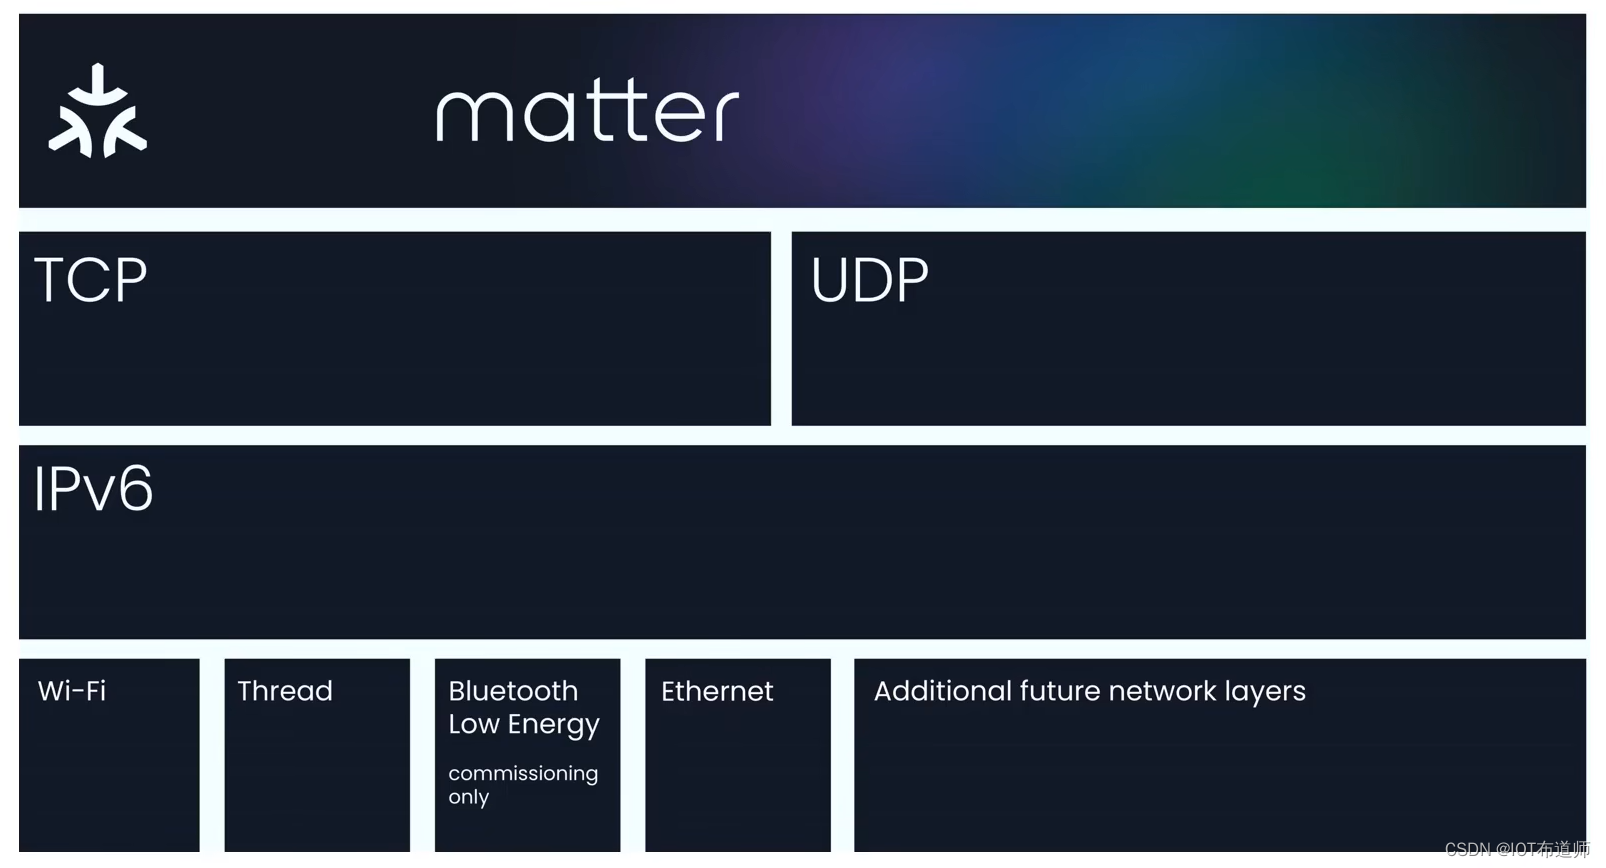 【Matter】解密Matter协议（一）--- 关键概念及特性